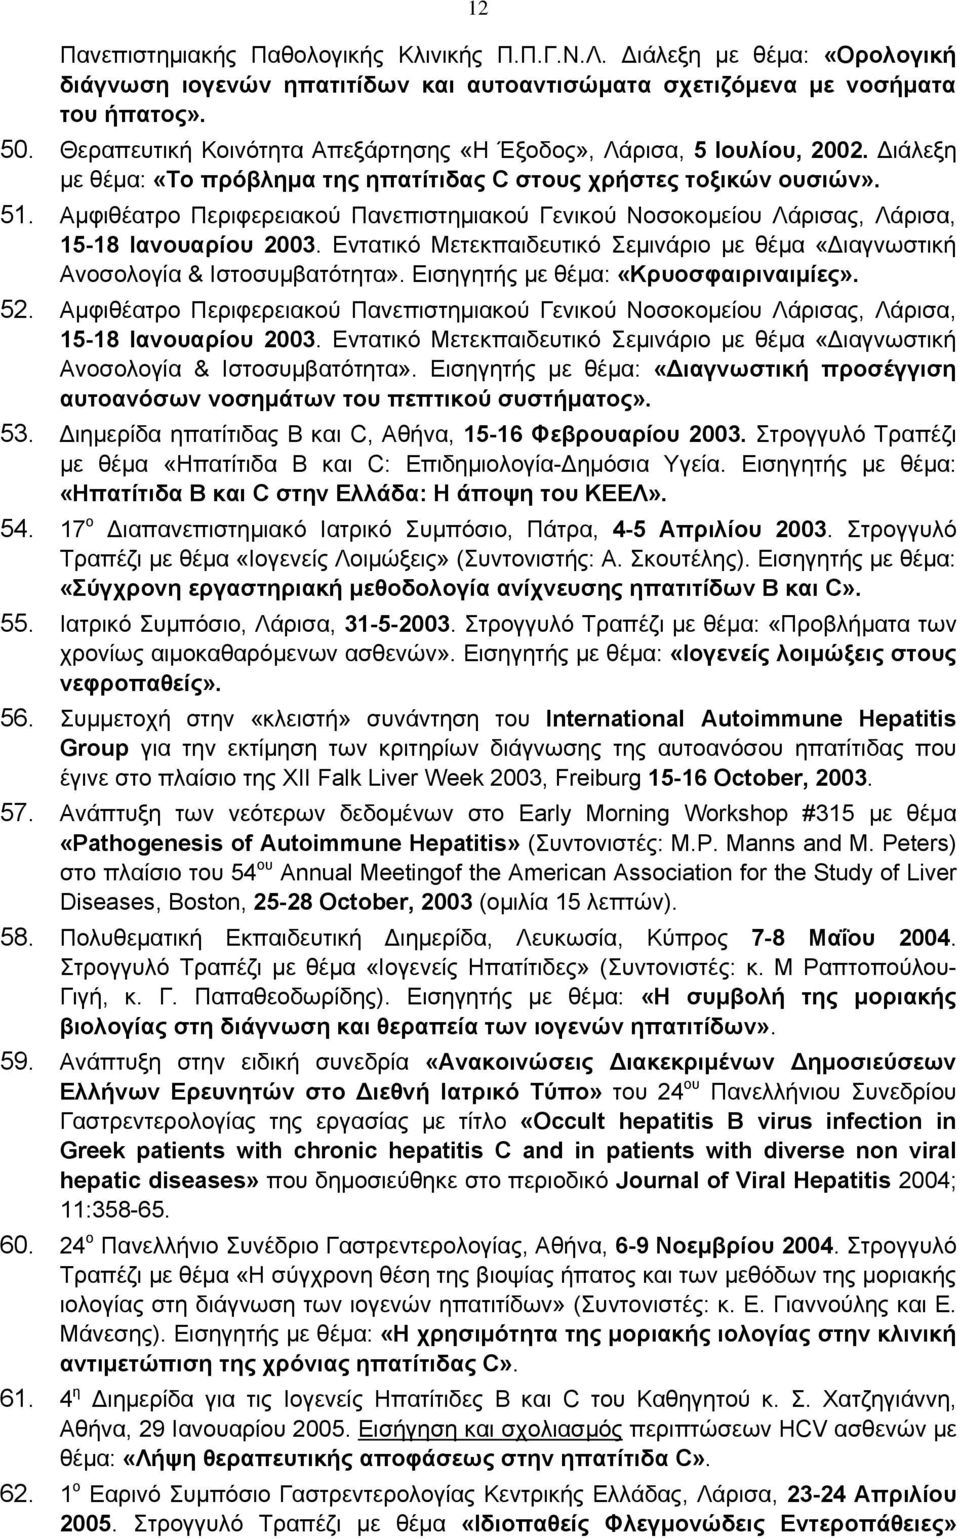 Αμφιθέατρο Περιφερειακού Πανεπιστημιακού Γενικού Νοσοκομείου Λάρισας, Λάρισα, 15-18 Ιανουαρίου 2003. Εντατικό Μετεκπαιδευτικό Σεμινάριο με θέμα «Διαγνωστική Ανοσολογία & Ιστοσυμβατότητα».